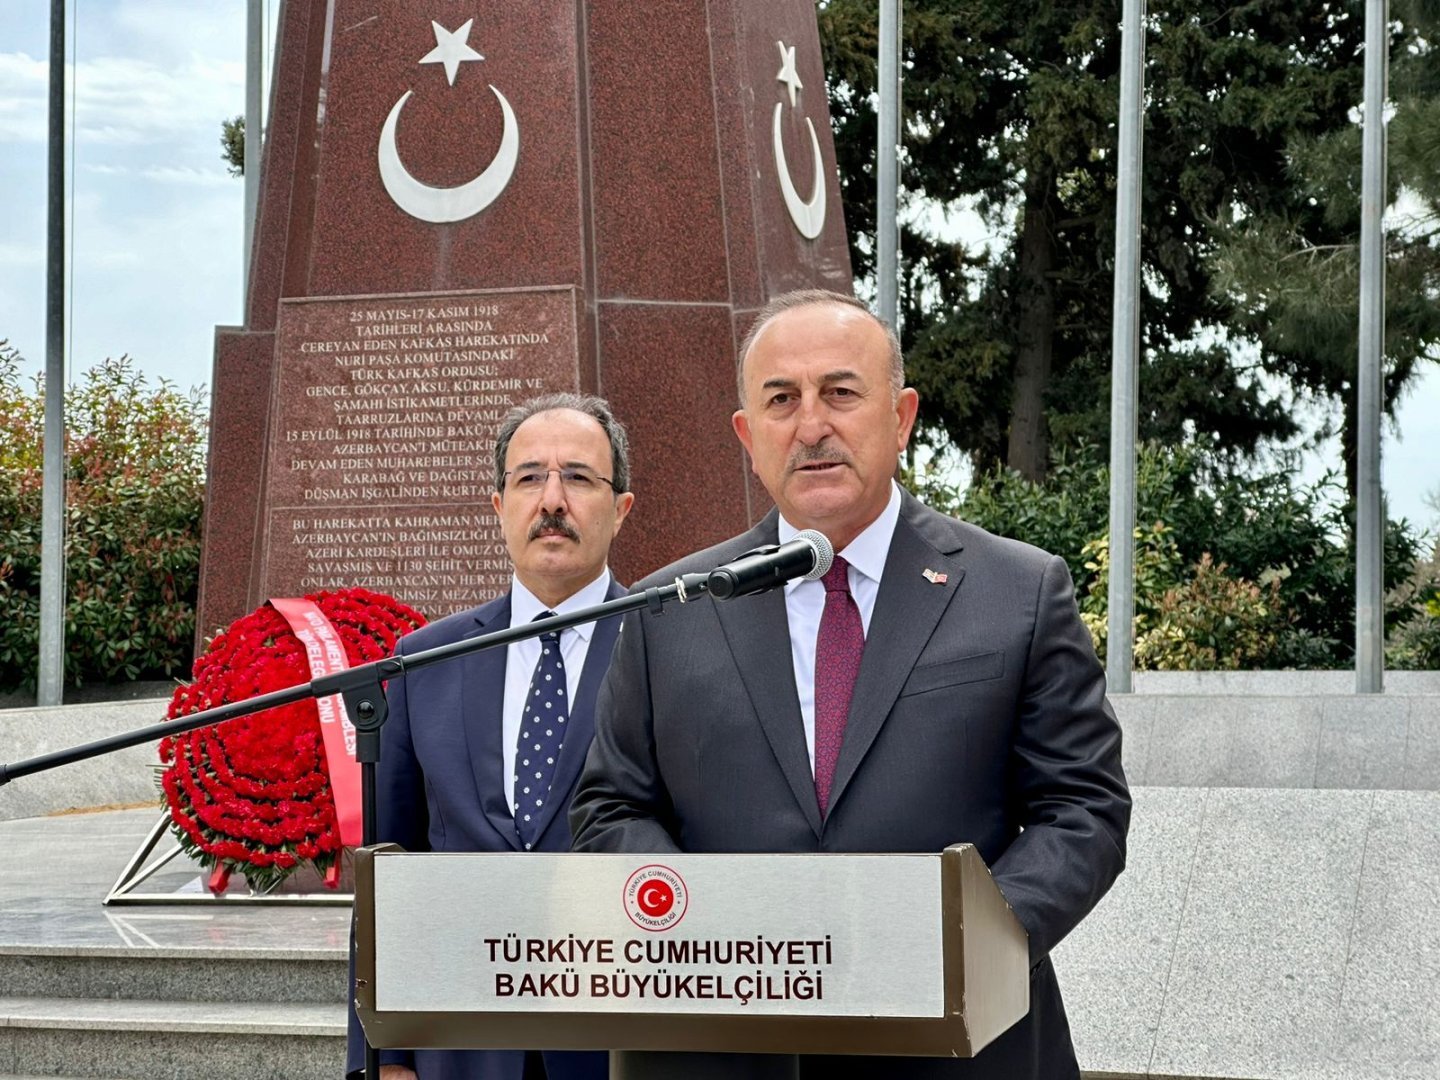 Подписание мирного договора между Азербайджаном и Арменией является обязательным - Мевлют Чавушоглу